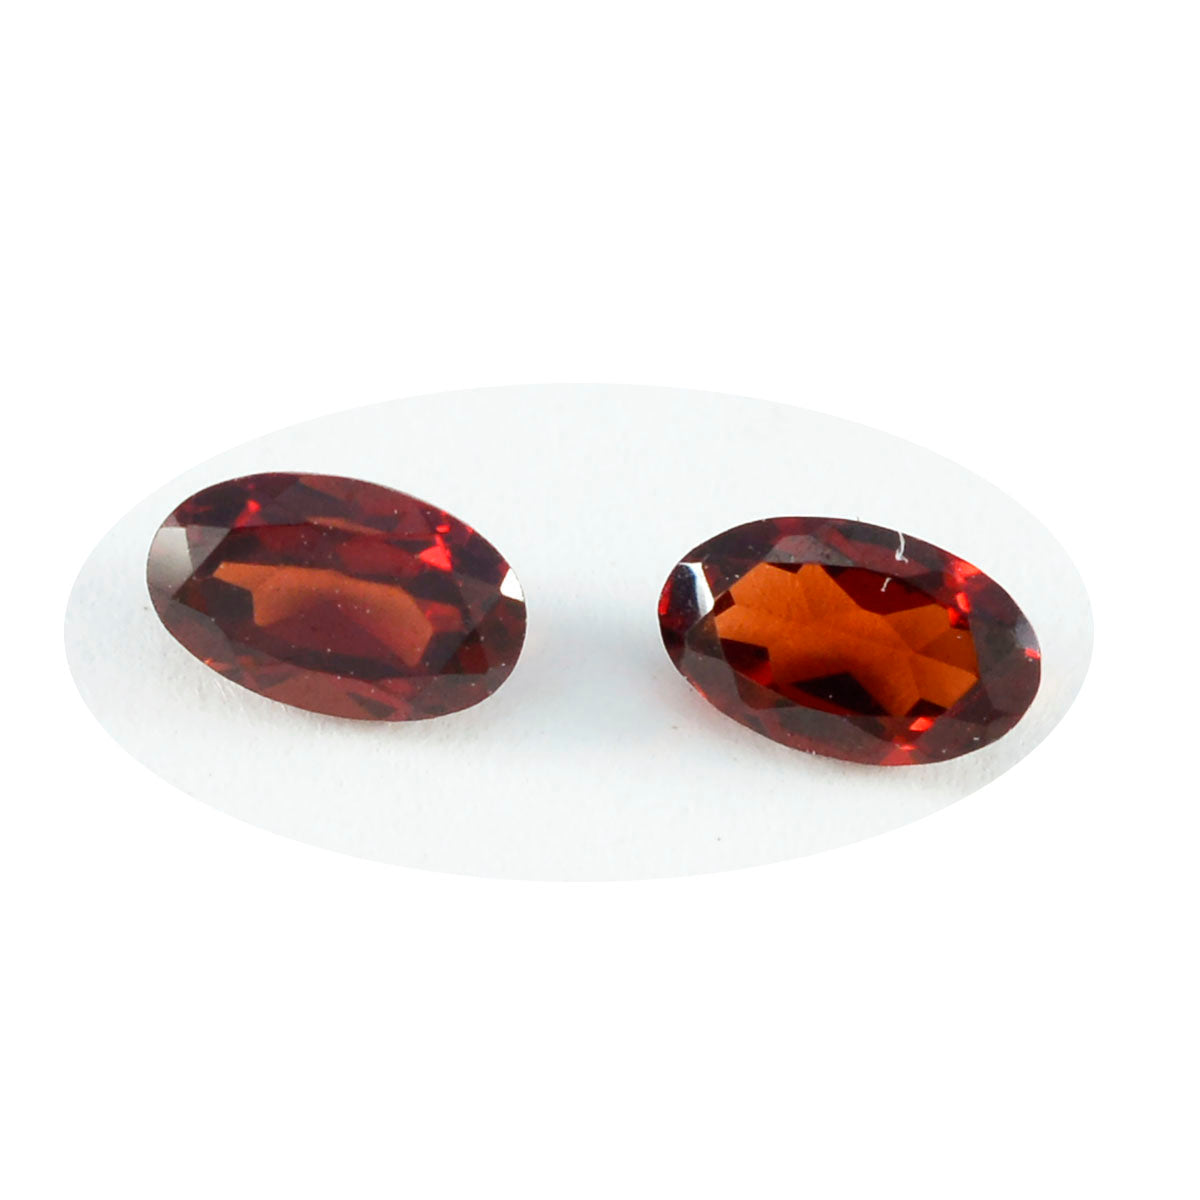 riyogems 1 шт. натуральный красный гранат ограненный 7x9 мм драгоценный камень овальной формы хорошего качества